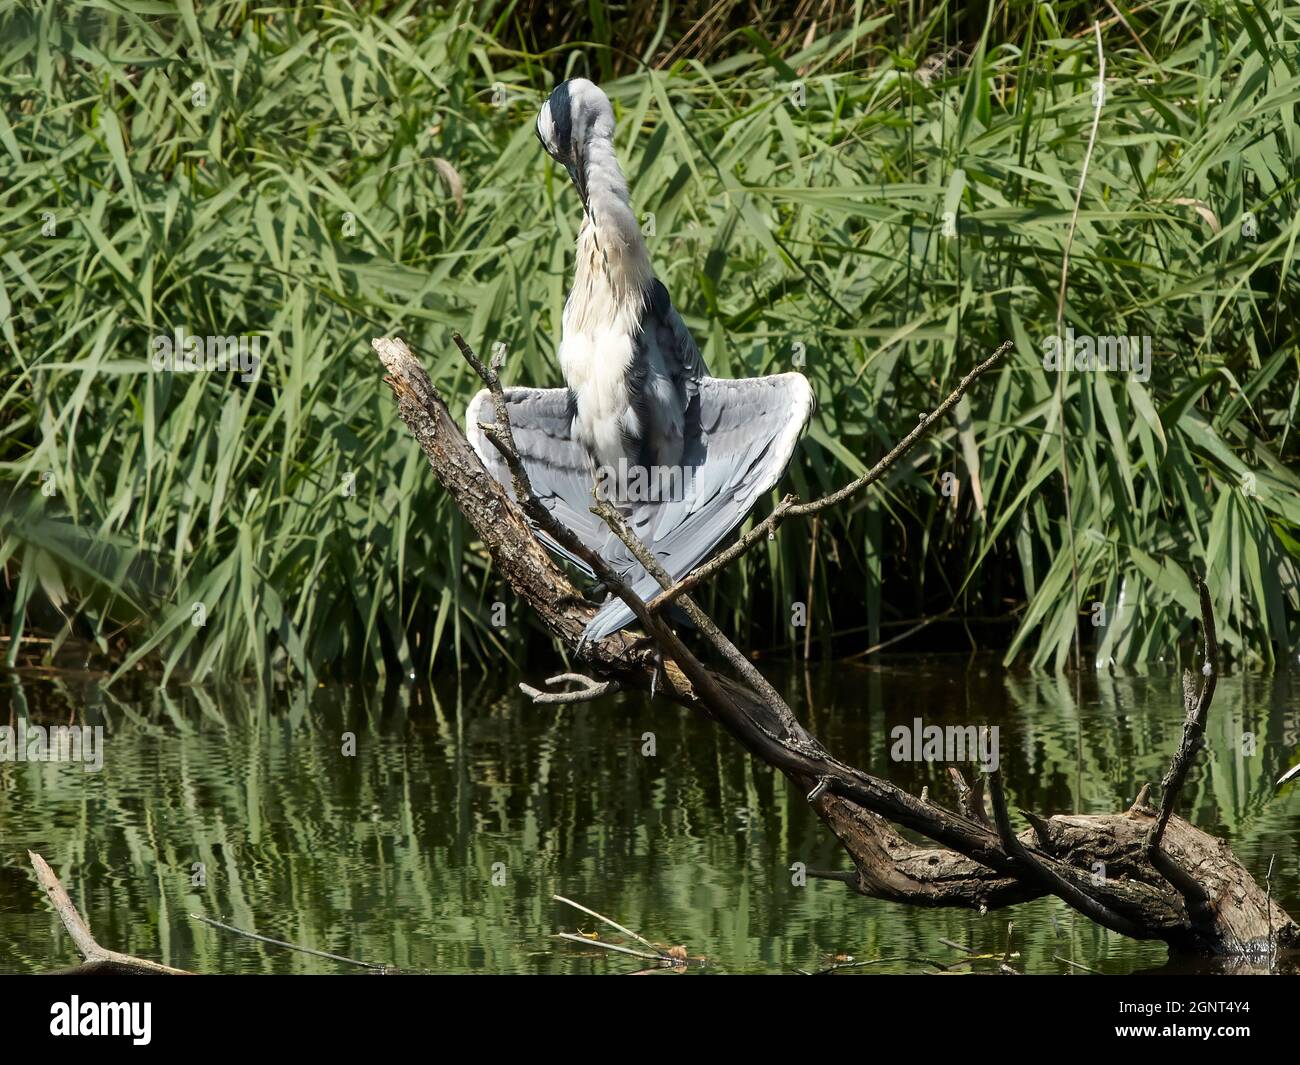 Una garza perca en una rama sumergida que emerge de un estanque y parece golpear un yoga-como posando, curvando sus alas para tomar el sol. Foto de stock